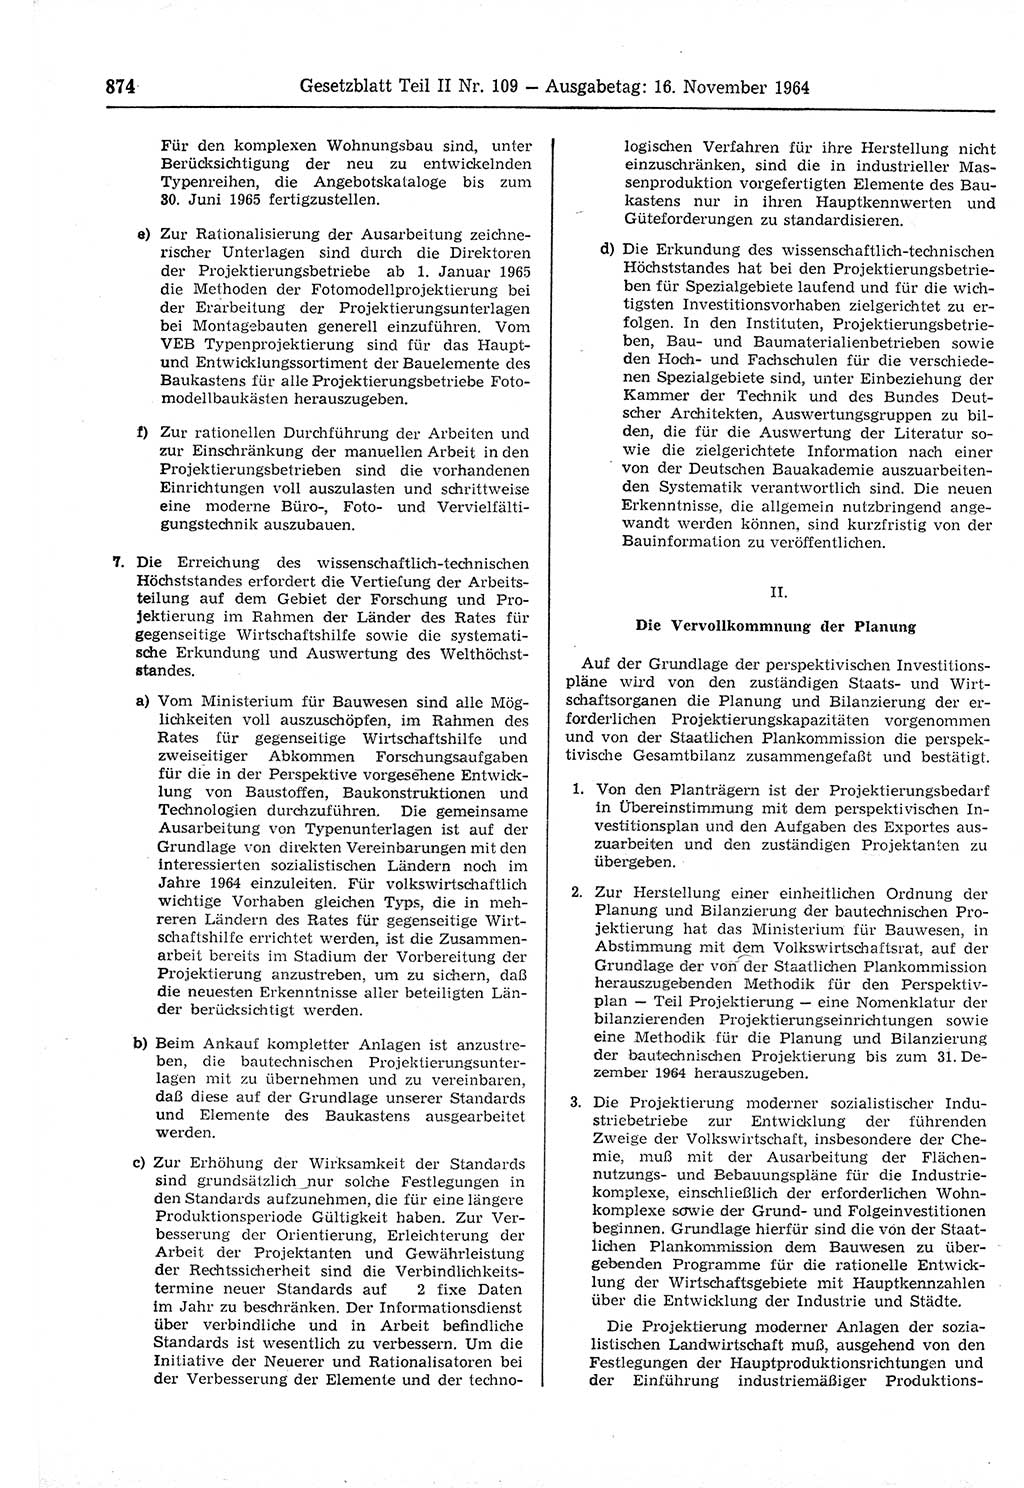 Gesetzblatt (GBl.) der Deutschen Demokratischen Republik (DDR) Teil ⅠⅠ 1964, Seite 874 (GBl. DDR ⅠⅠ 1964, S. 874)